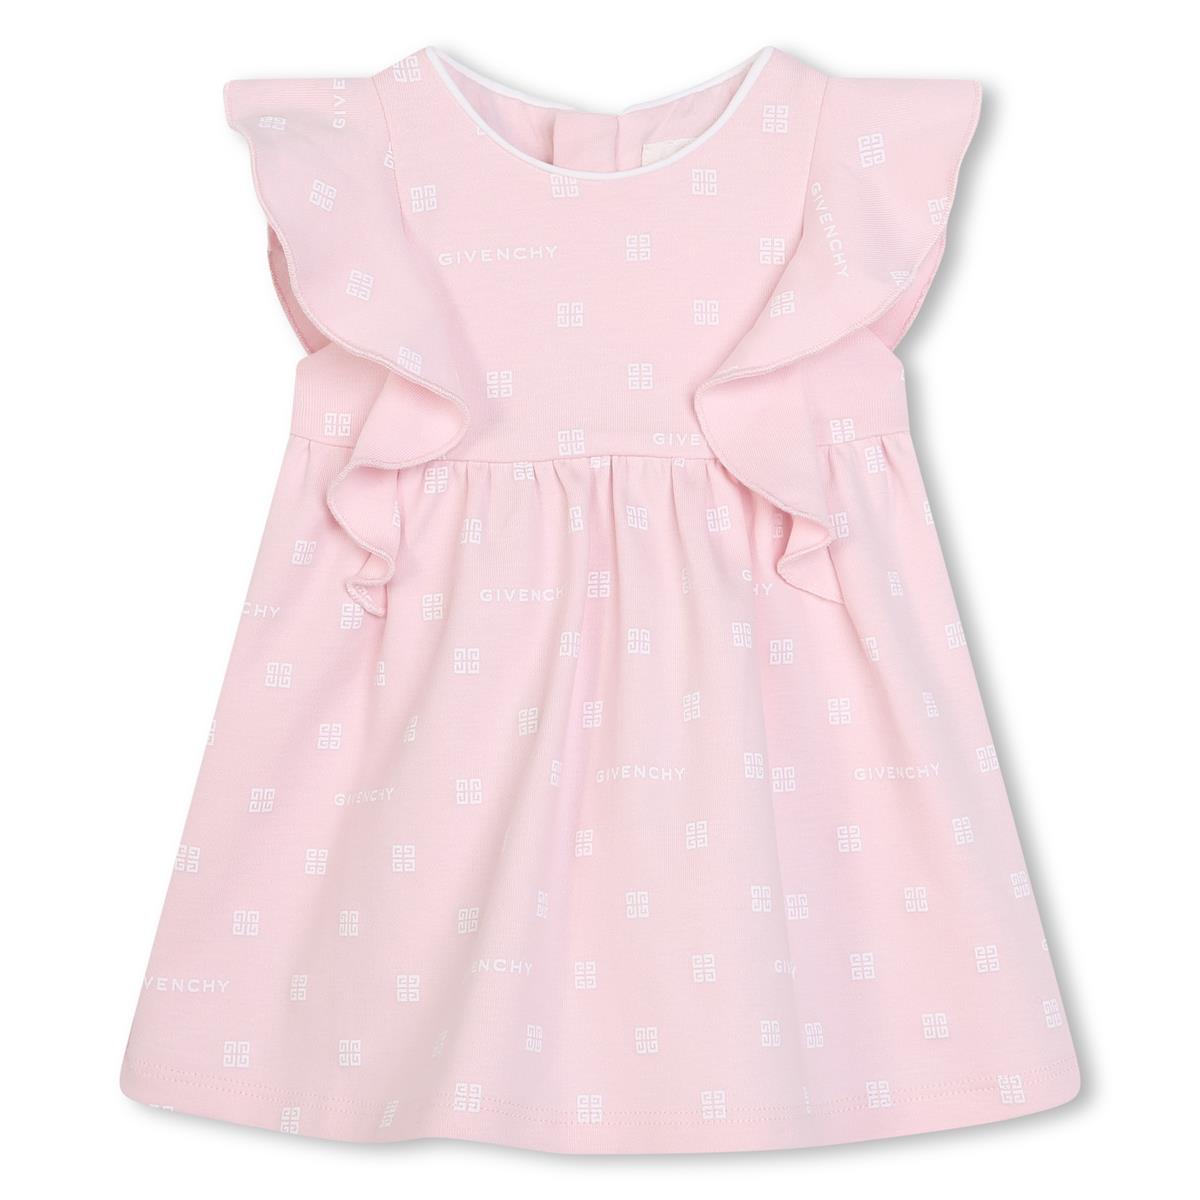 Baby Girls Pink Cotton Dress Set